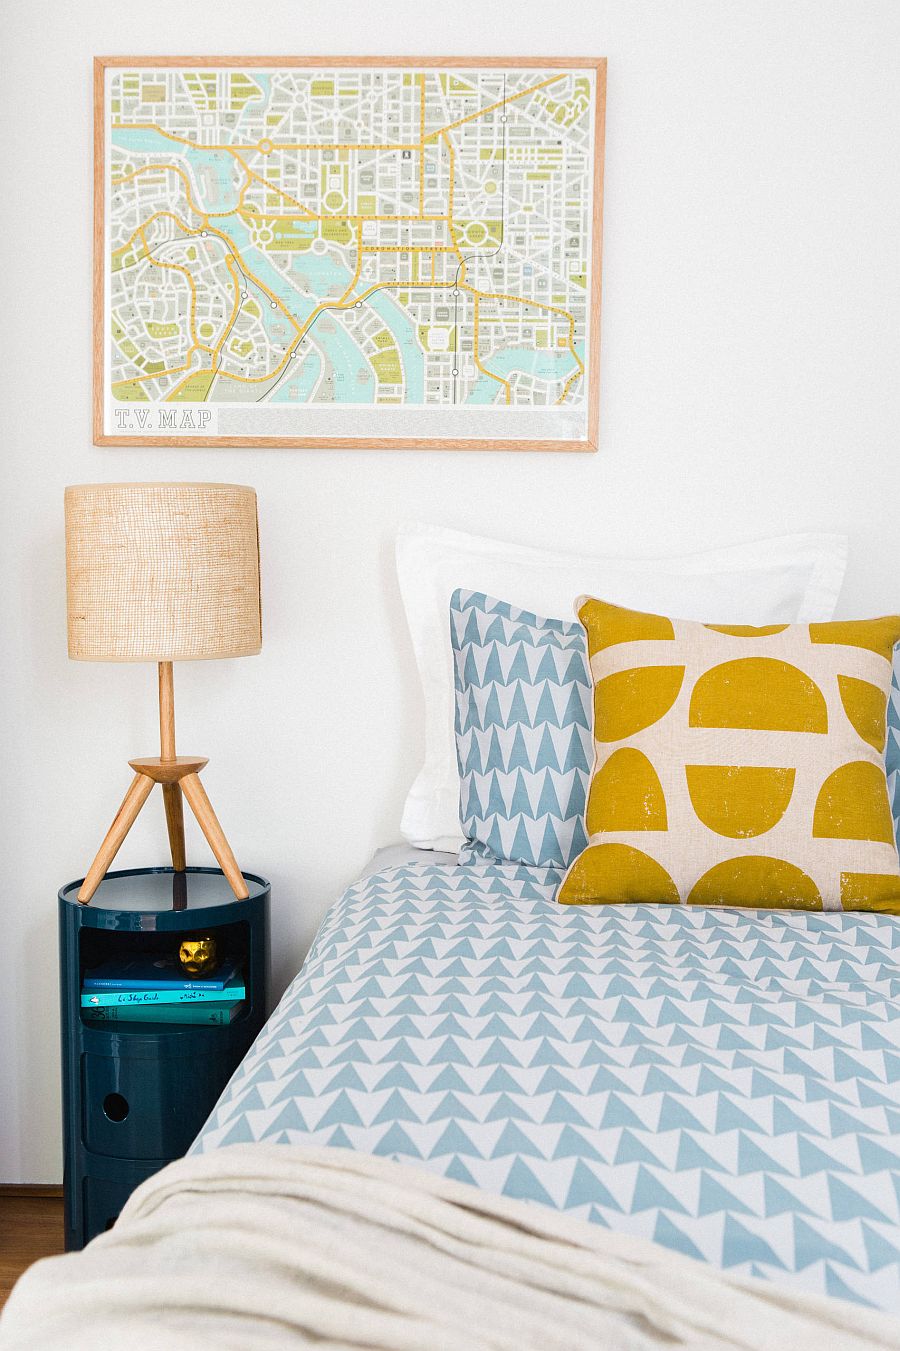 Hình ảnh một góc phòng ngủ với giường nệm êm ái, gối họa tiết chấm bi màu vàng, đèn ngủ màu hồng phấn, bản đồ điểm nhấn